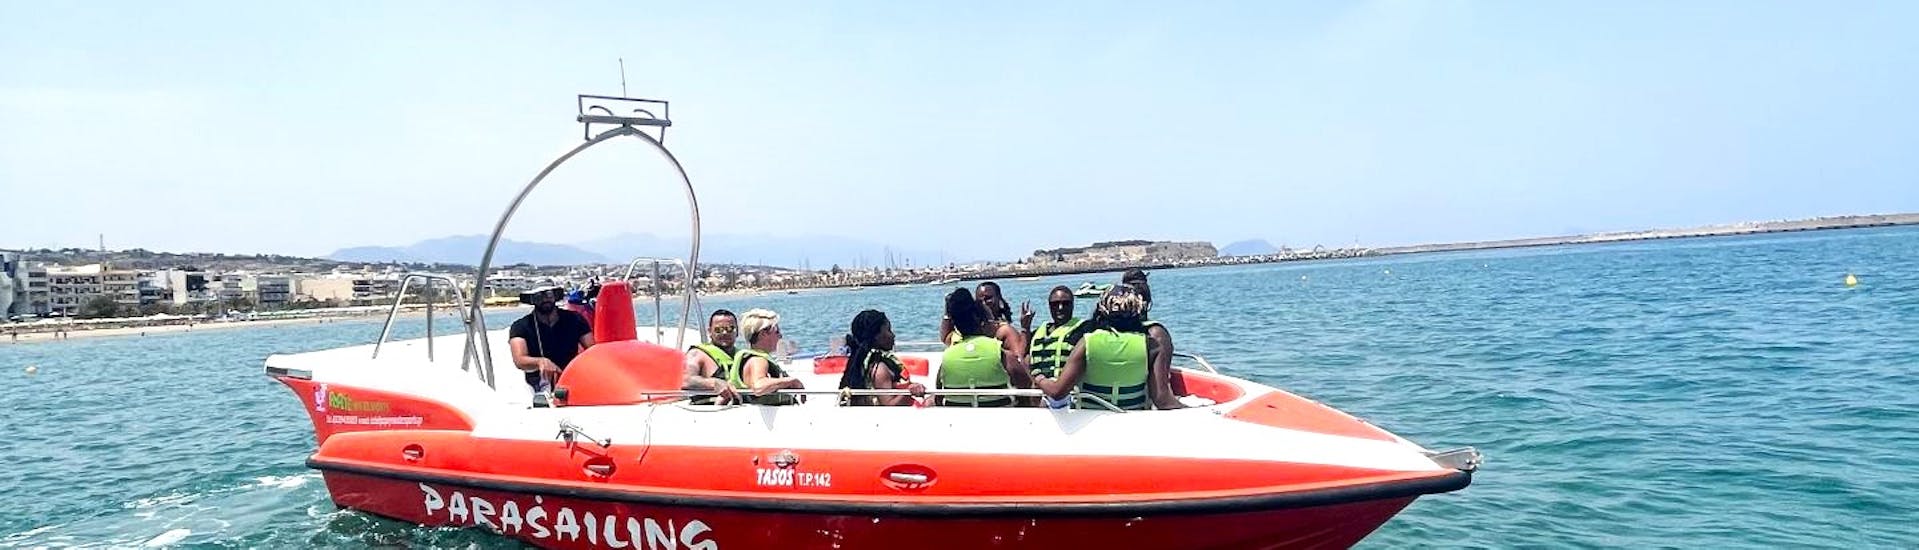 Vue lors de l'Excursion privée en bateau depuis Réthymnon aux grottes des pirates avec Baignade avec Popeye Watersports Crete.